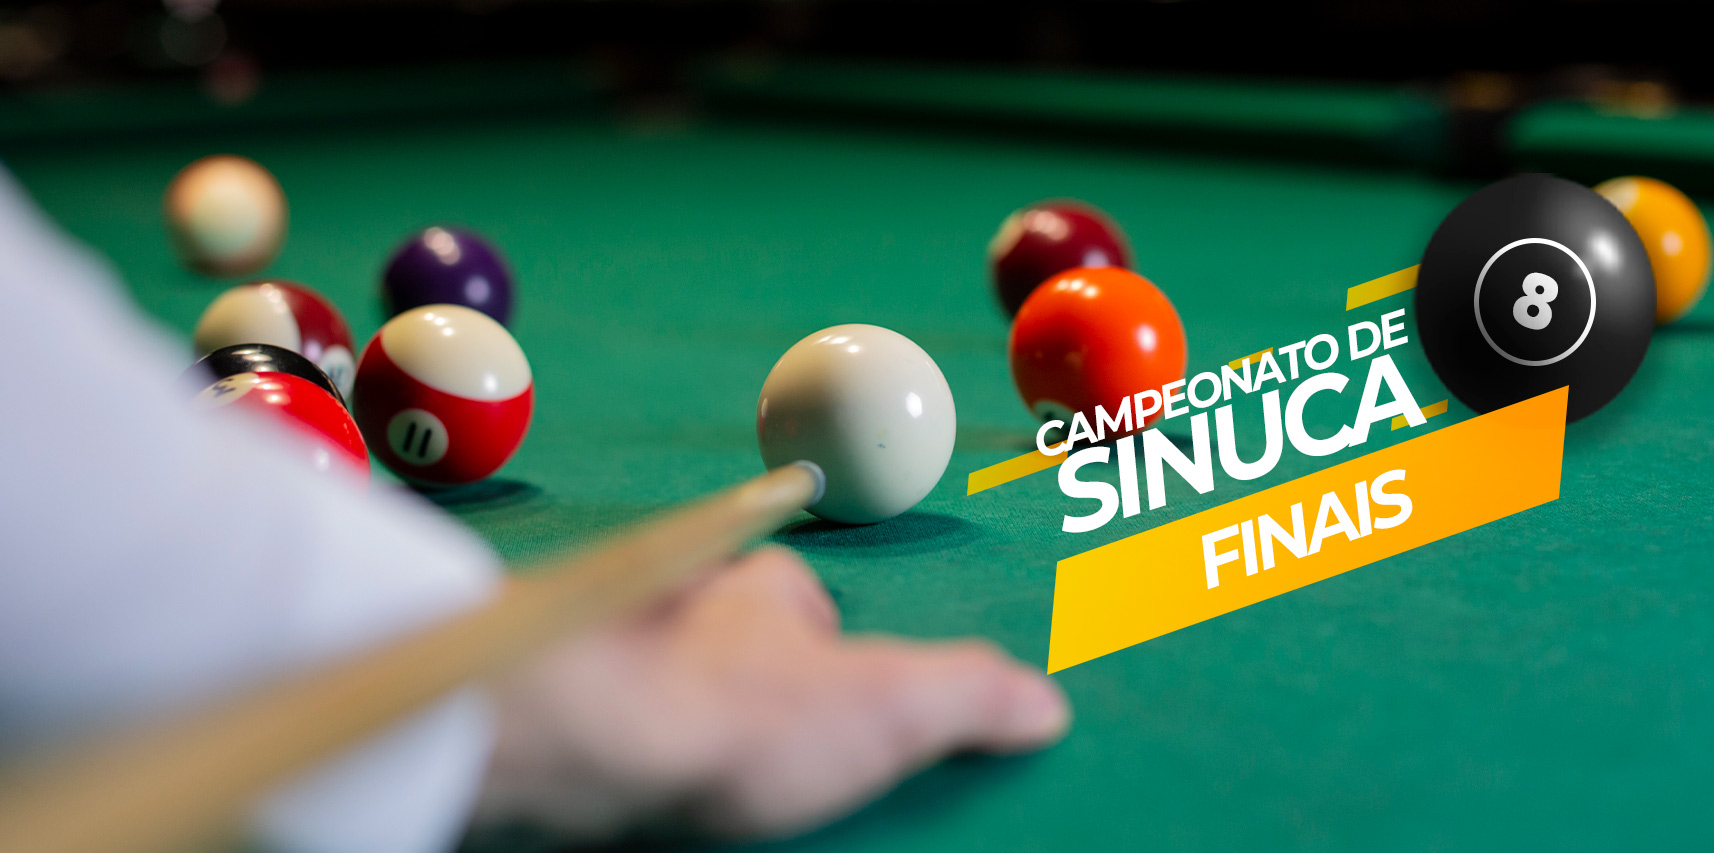 Semifinais e Final do 8º Campeonato de Sinuca de Vargem Alta acontecem neste sábado (05)